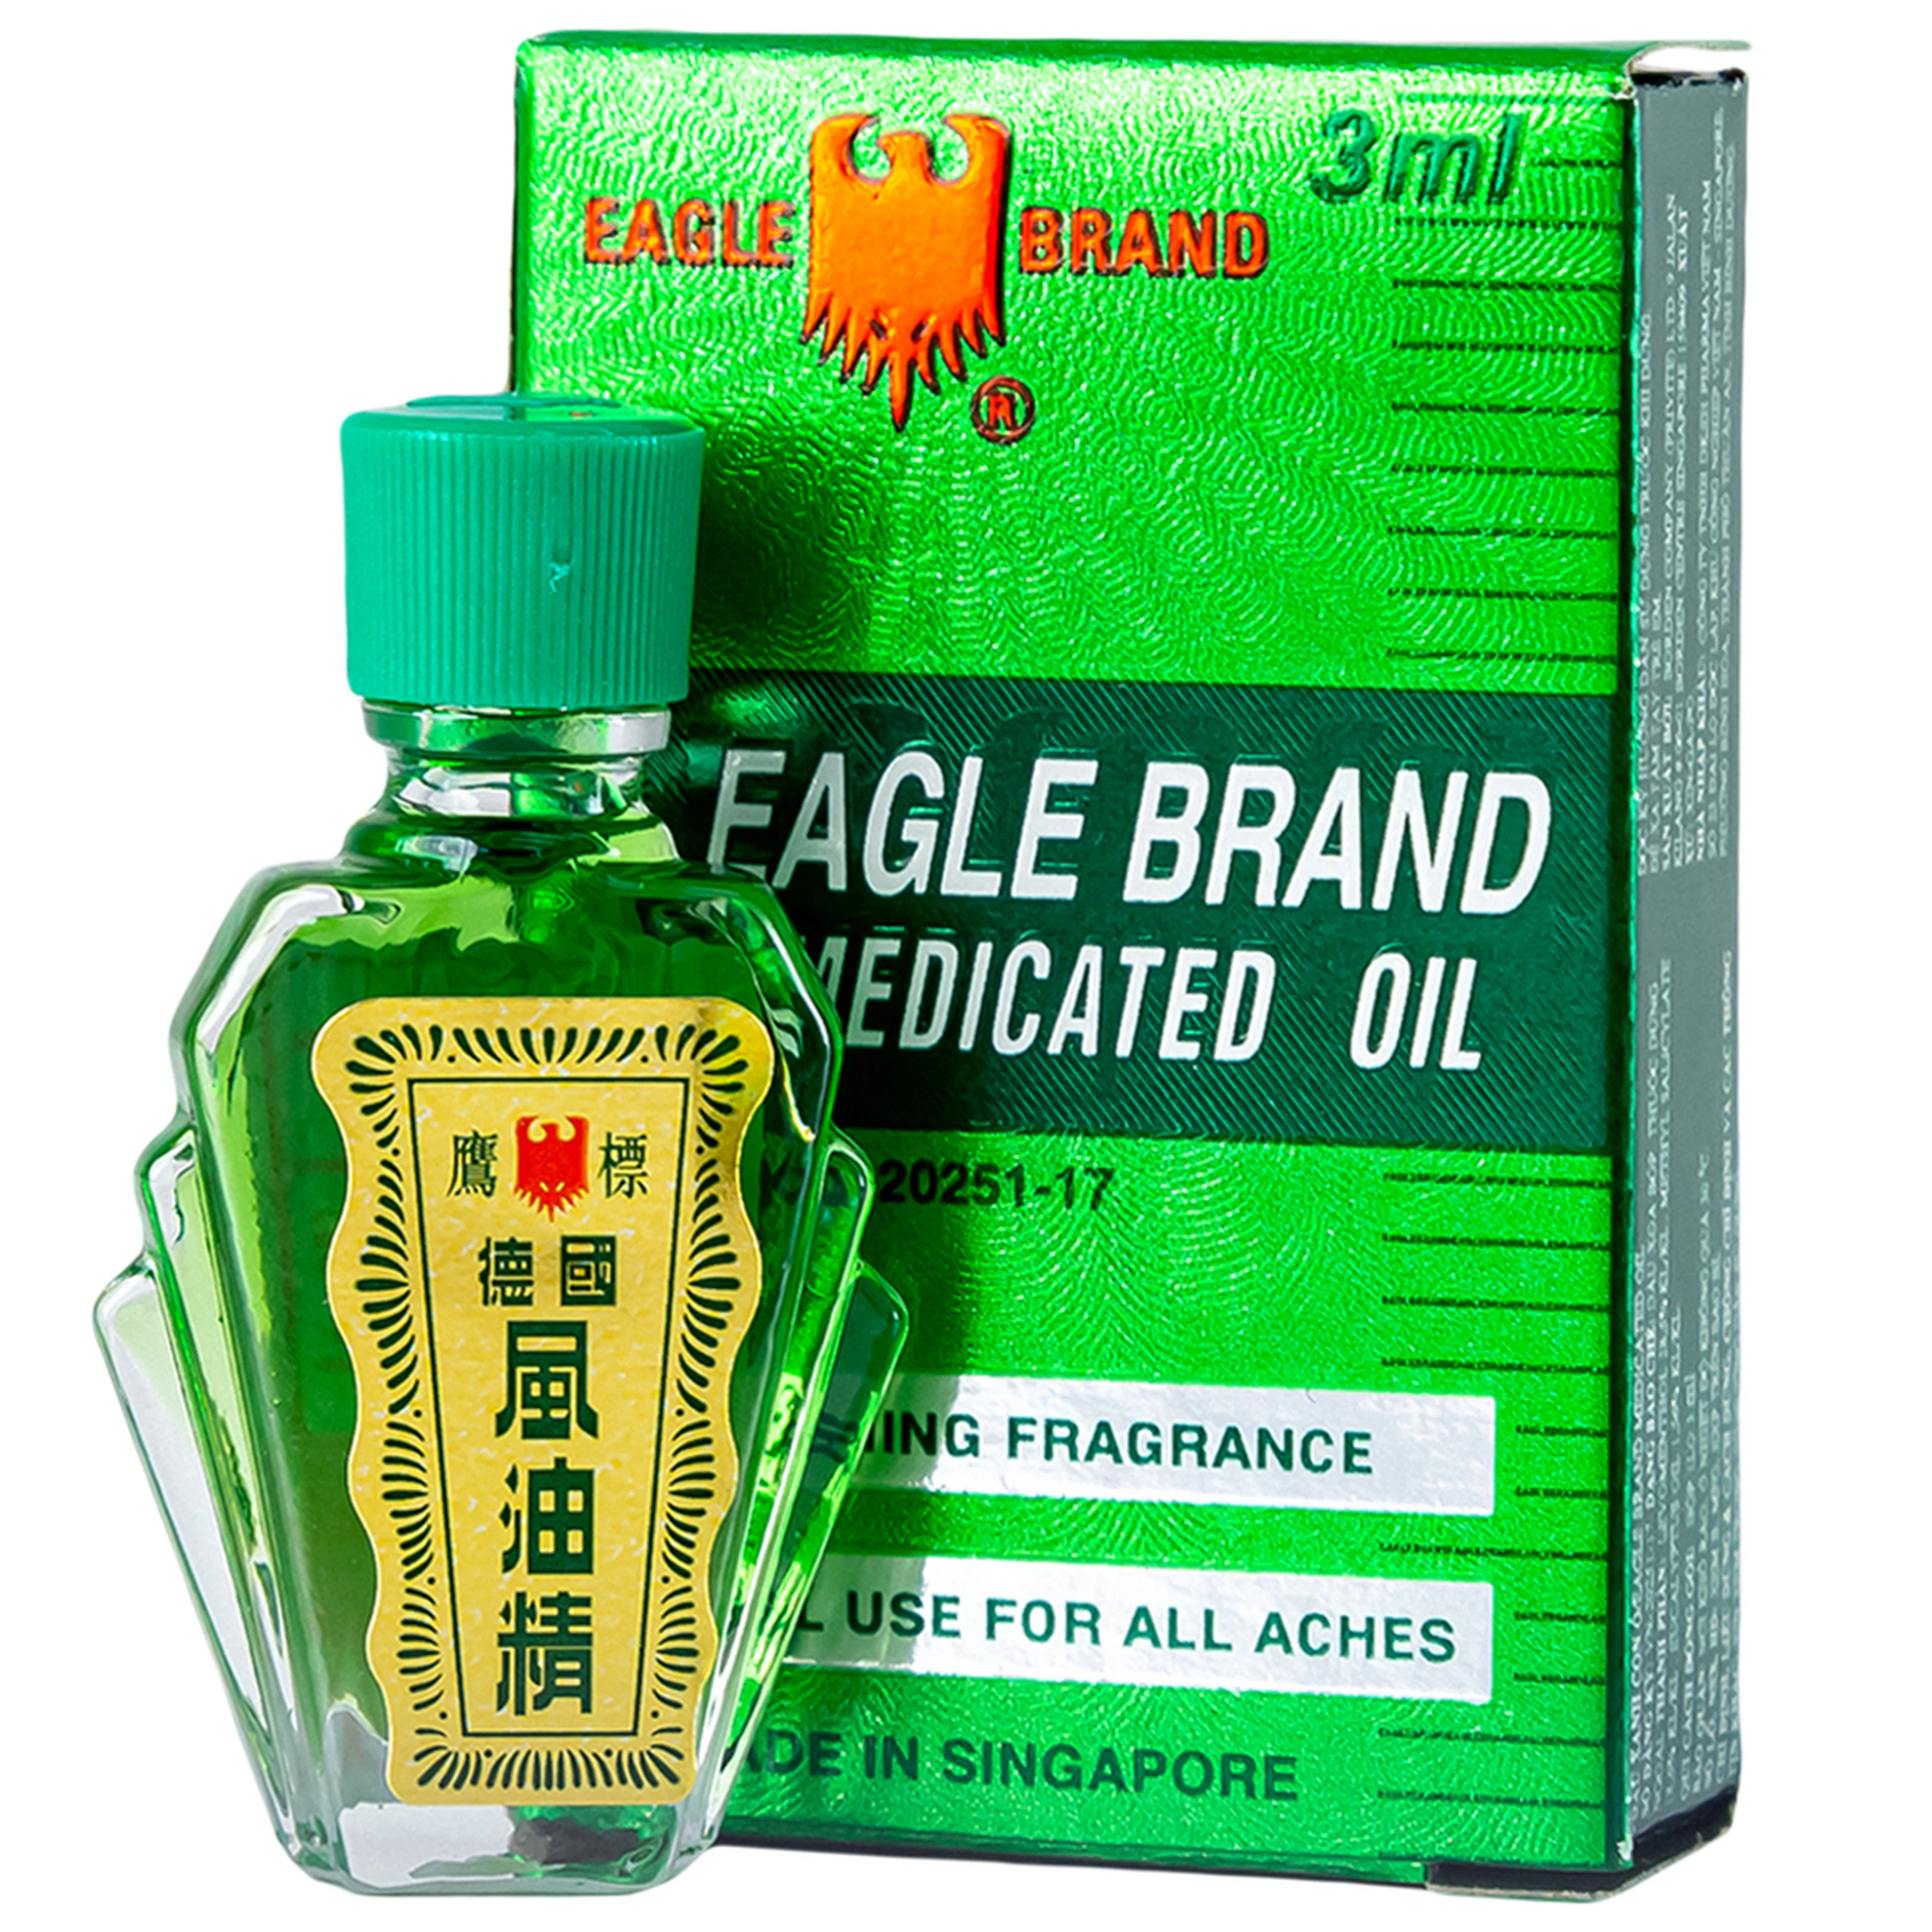 Dầu gió xanh Con Ó Eagle Brand Medicated Oil giảm nhức đầu, cảm cúm, đau lưng, viêm khớp (12 chai x 3ml)